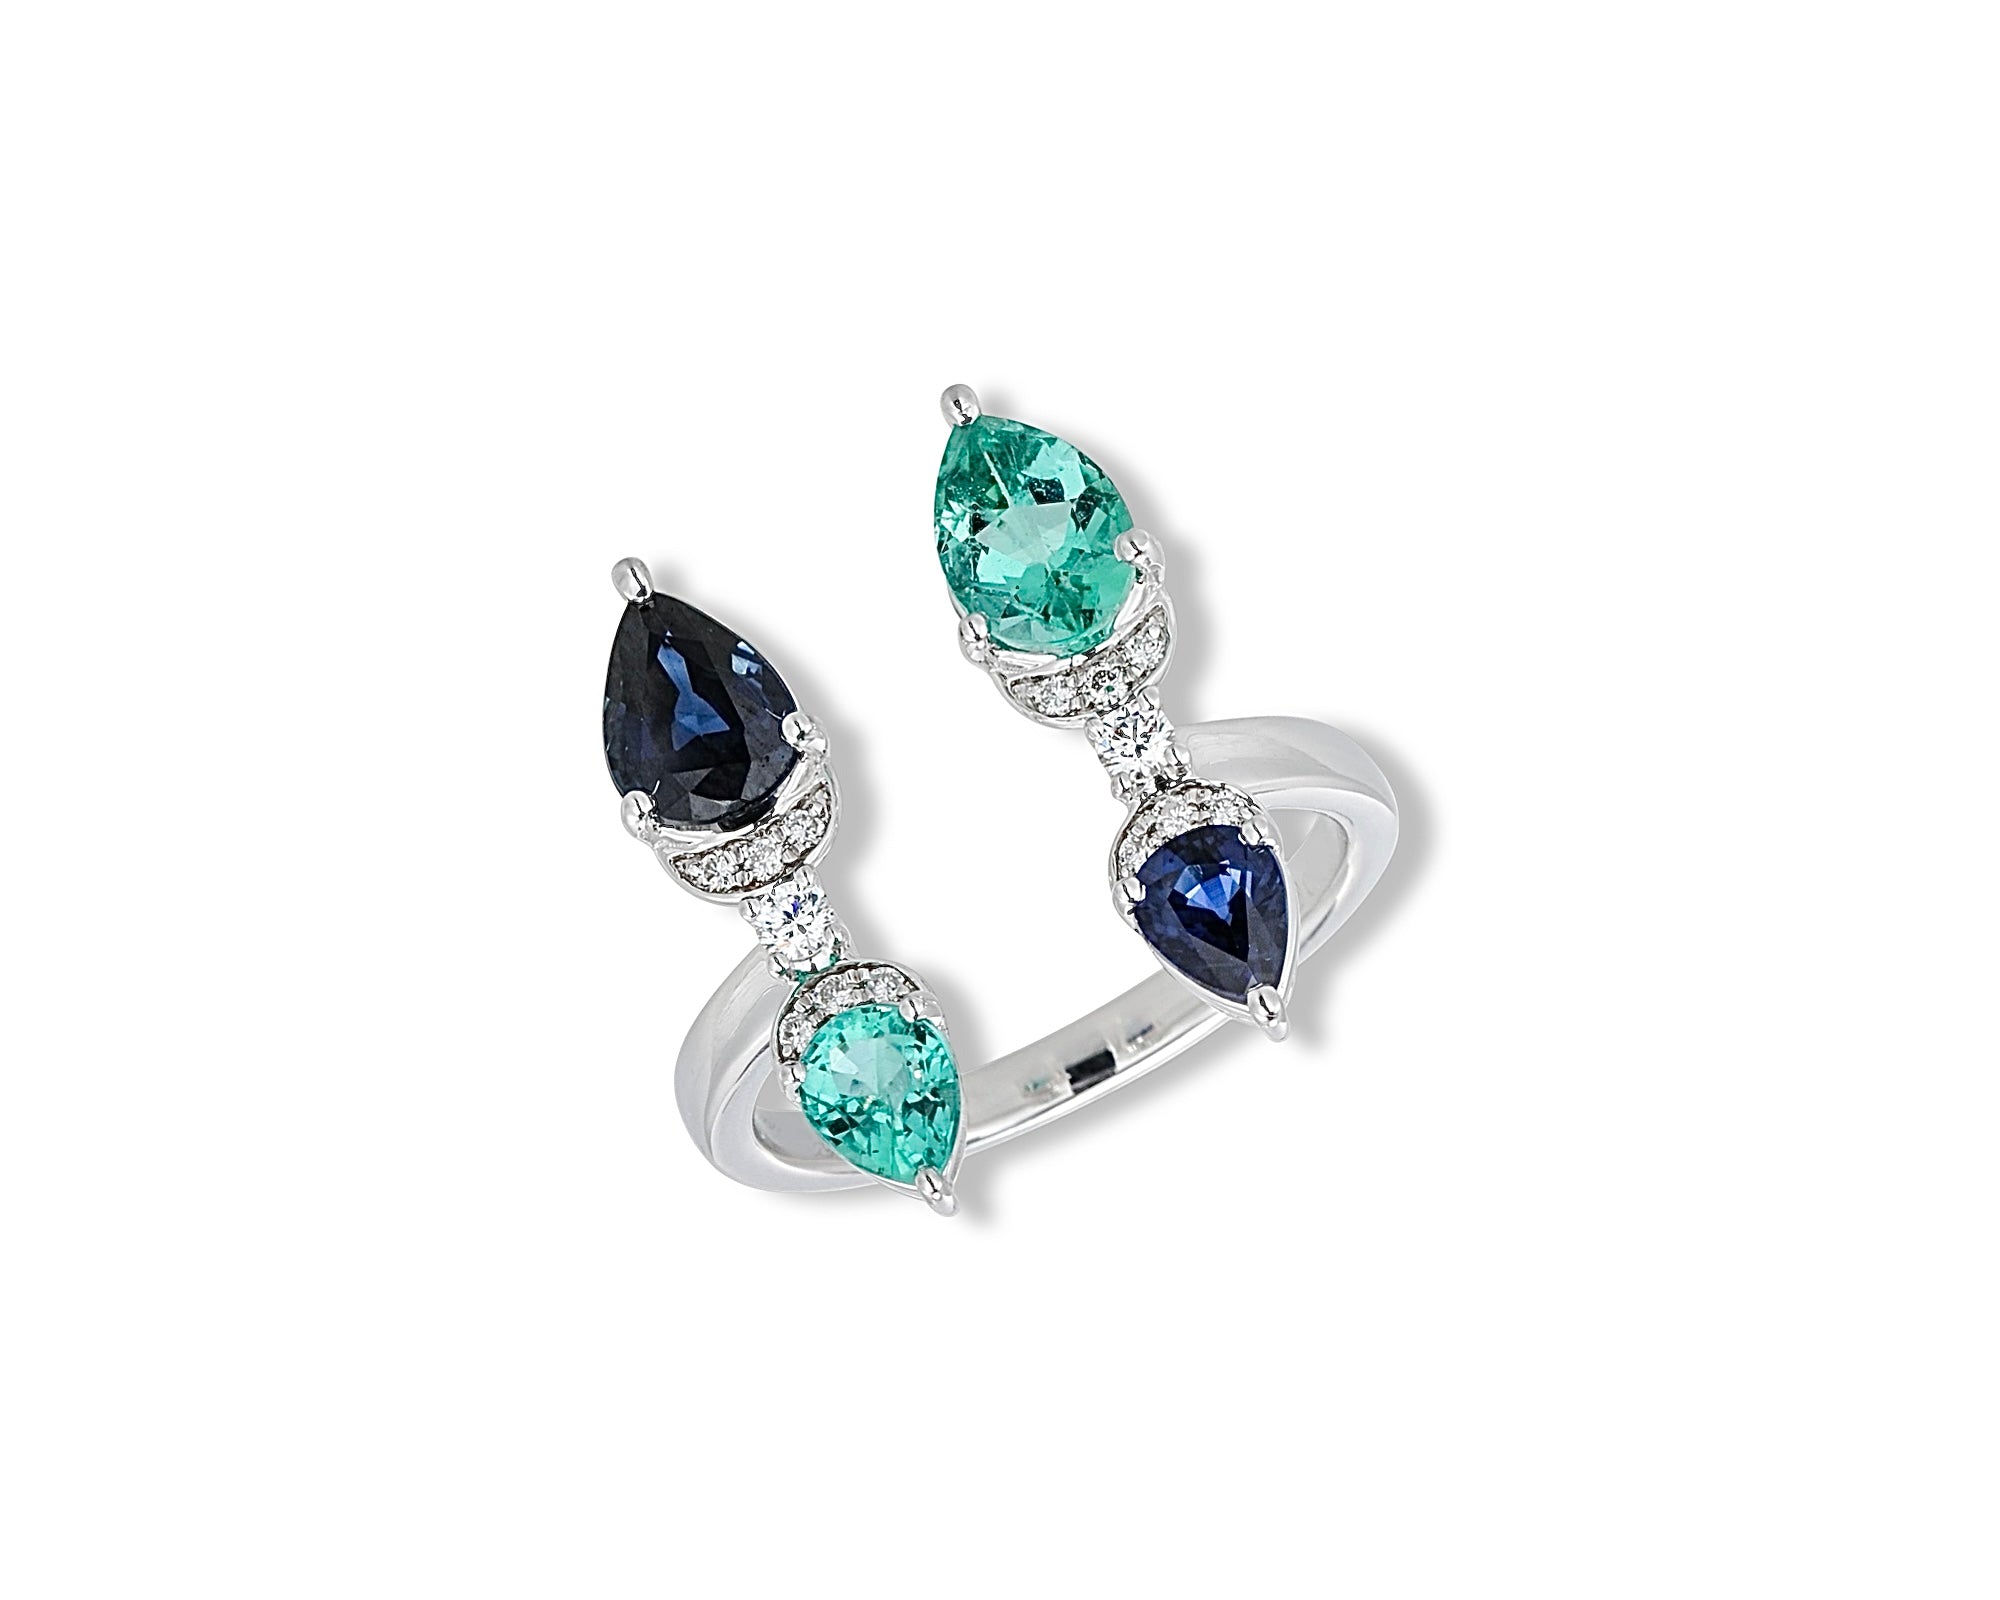 Dancing Butterflies (Blue Sapphire & Emerald) Ring